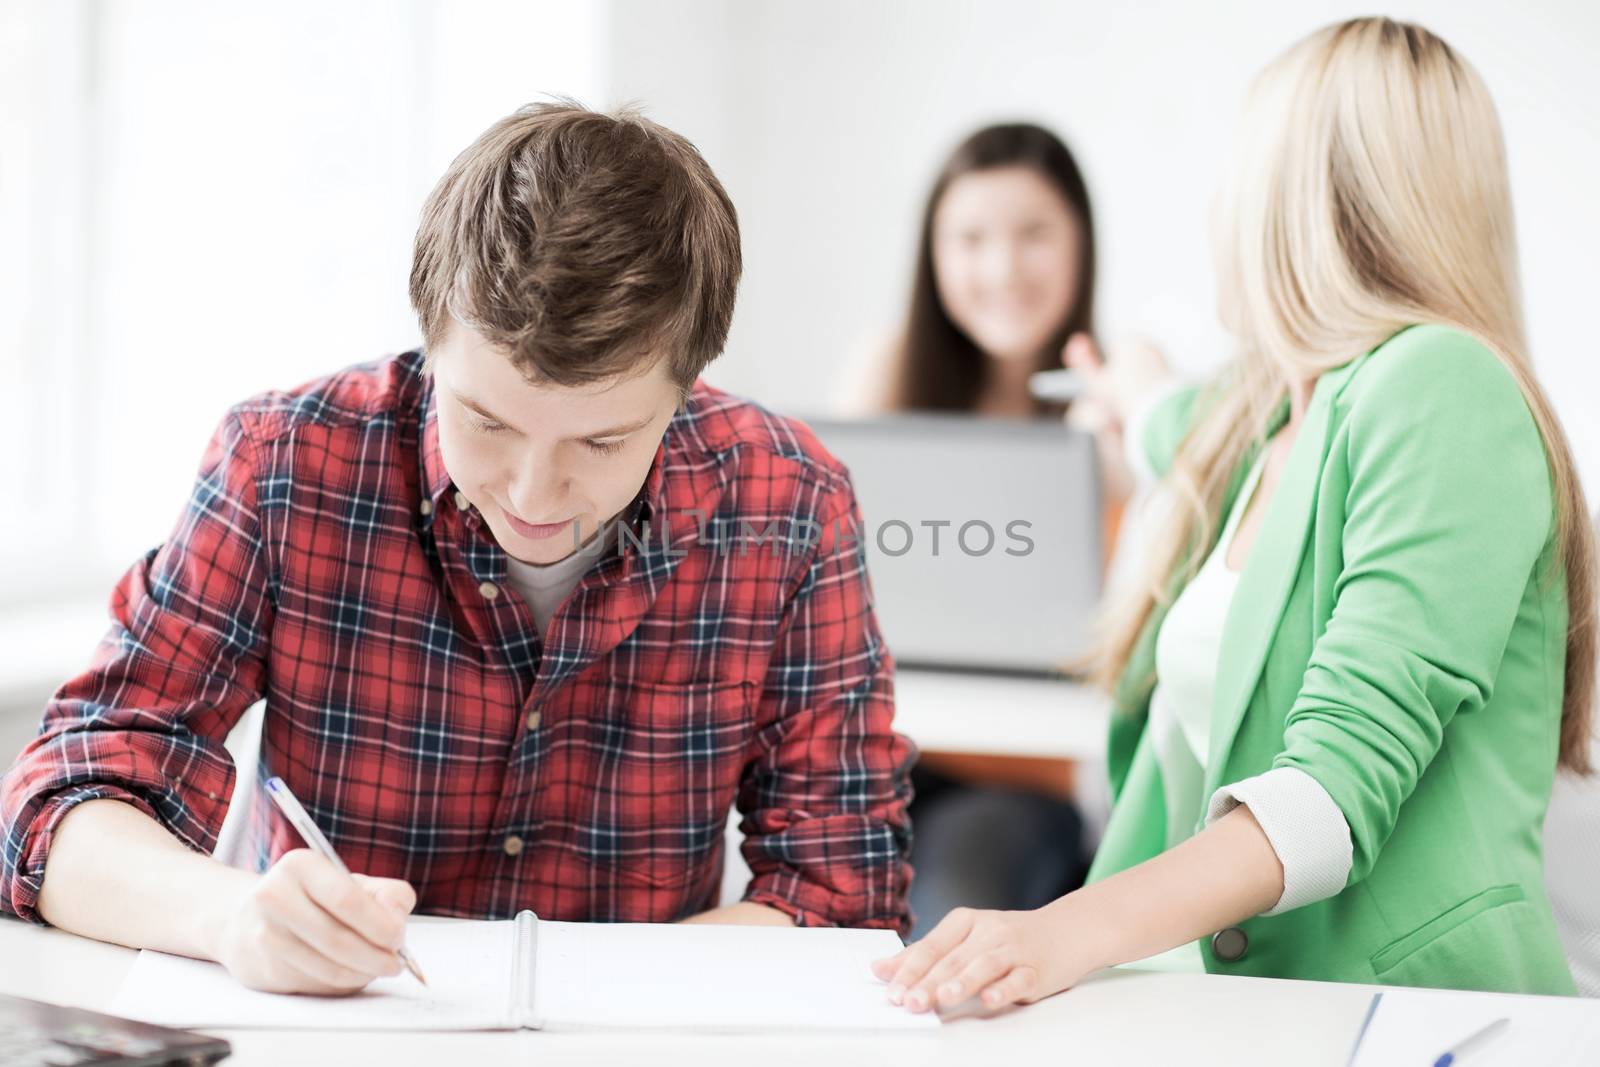 students writing something at school by dolgachov